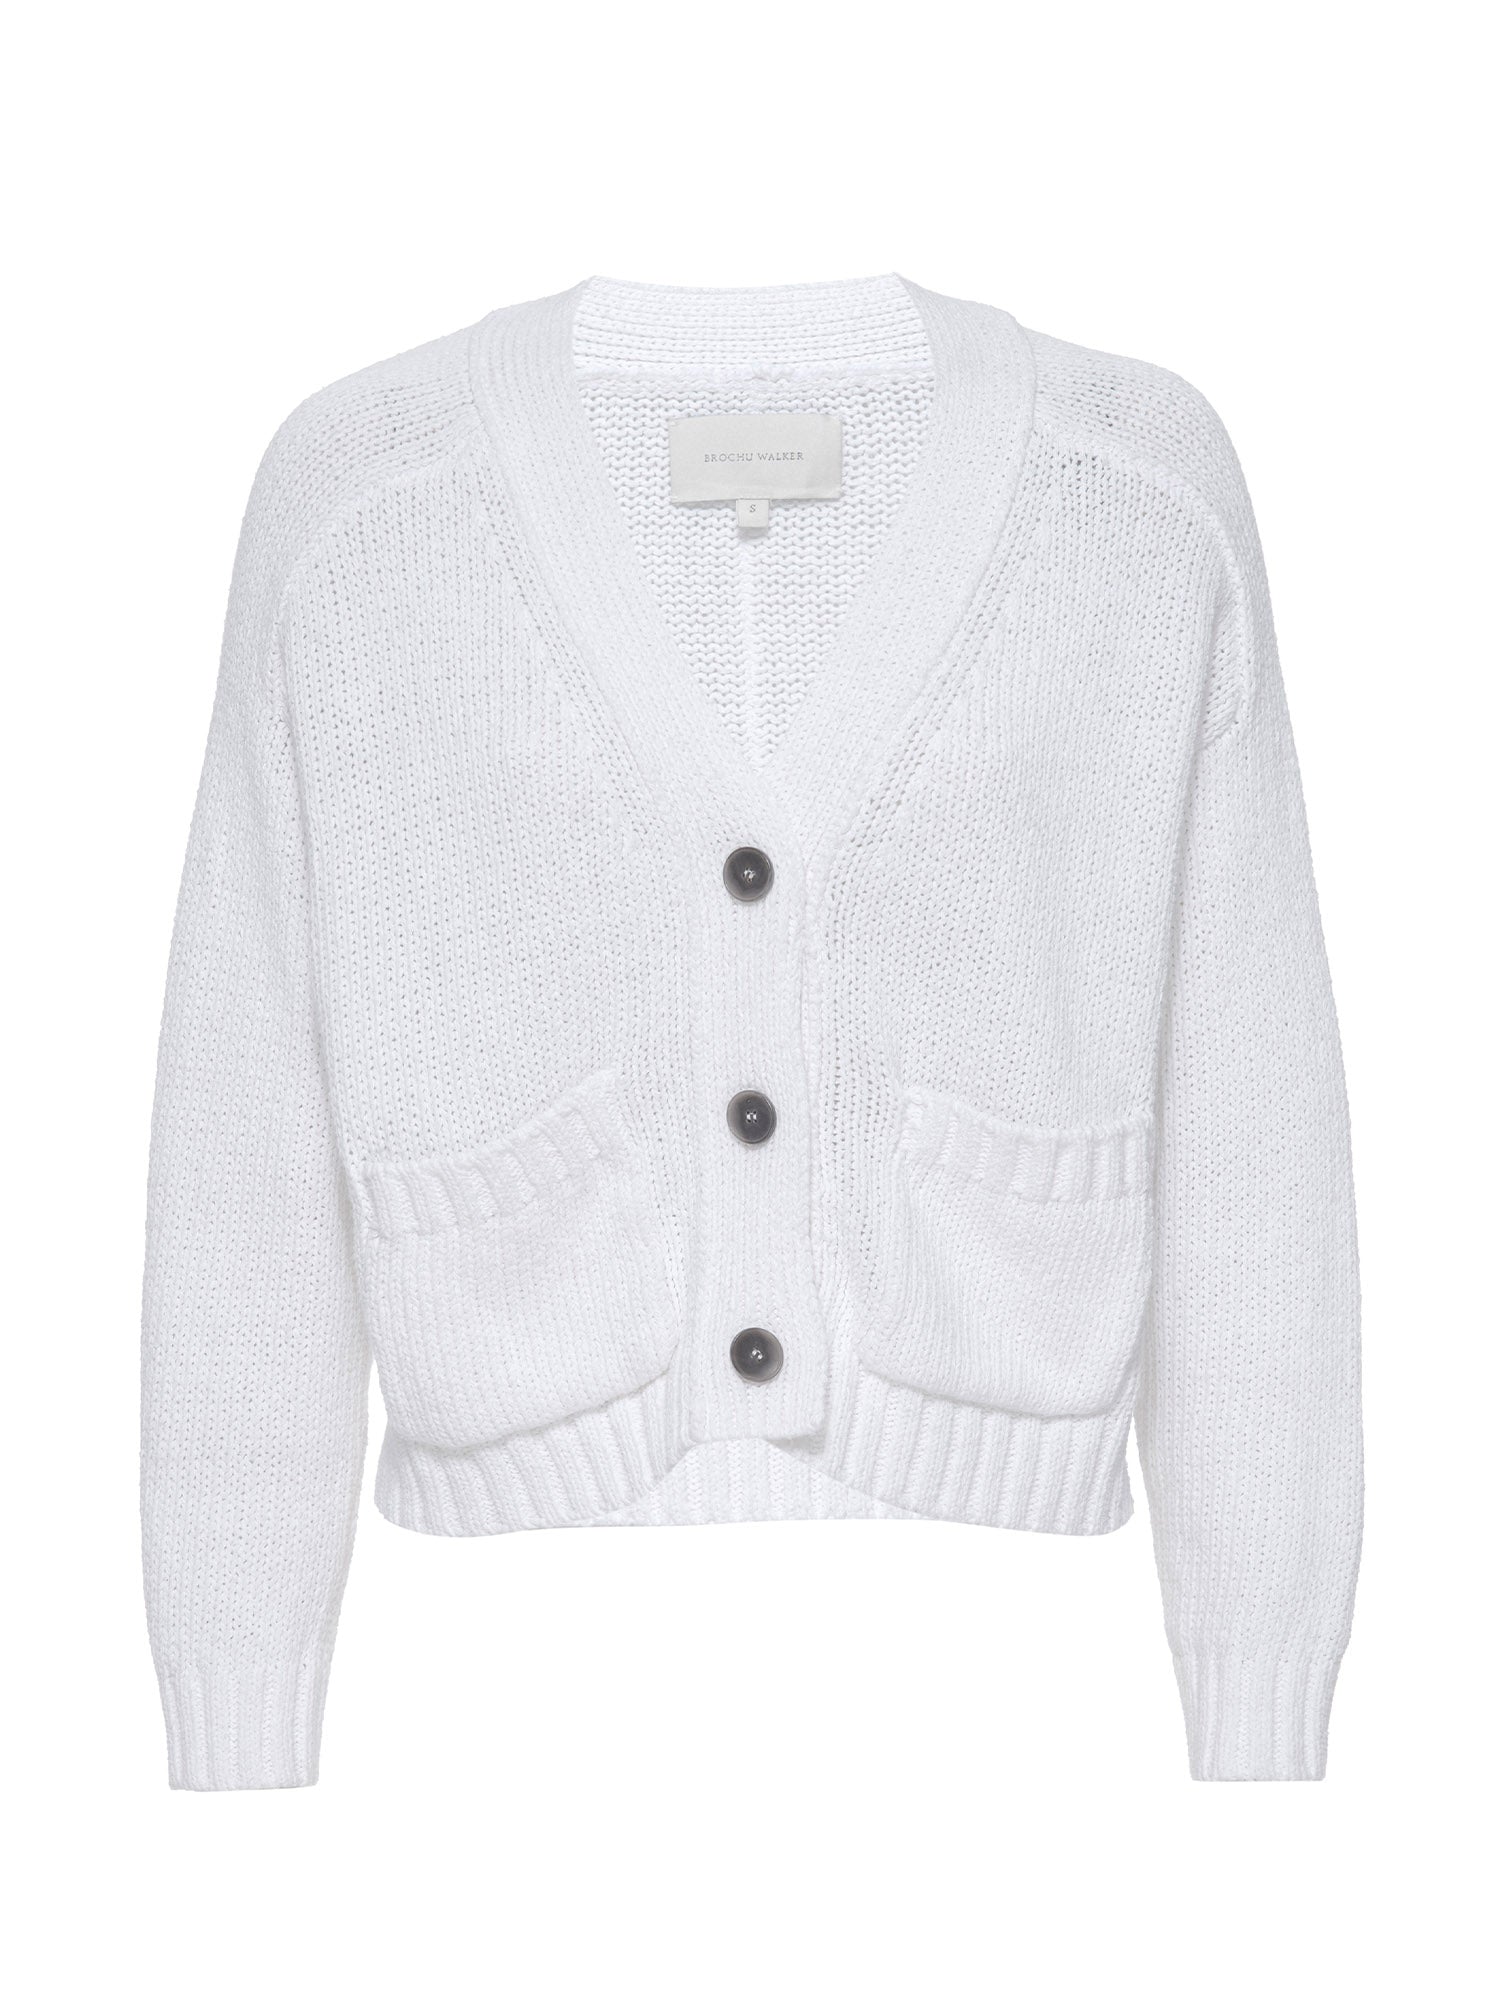 Brochu Walker Women's Linen/Cotton Cropped Cardigan, White